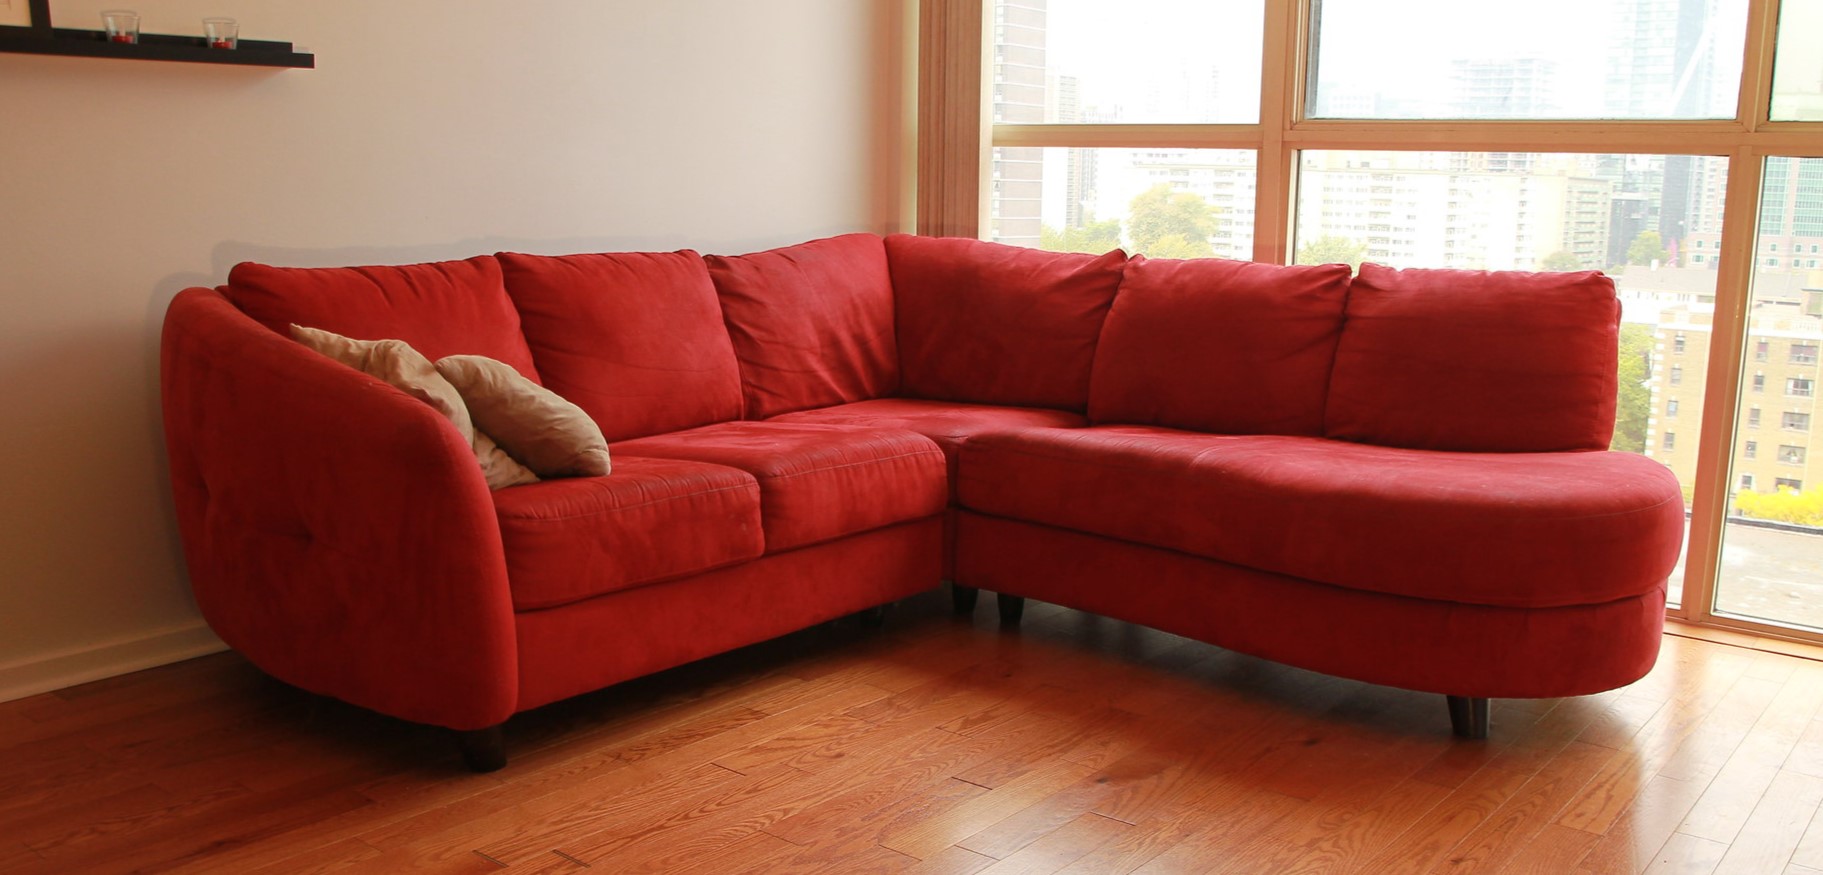 Красный угловой диван можно использовать в качестве акцента в светлой гостиной